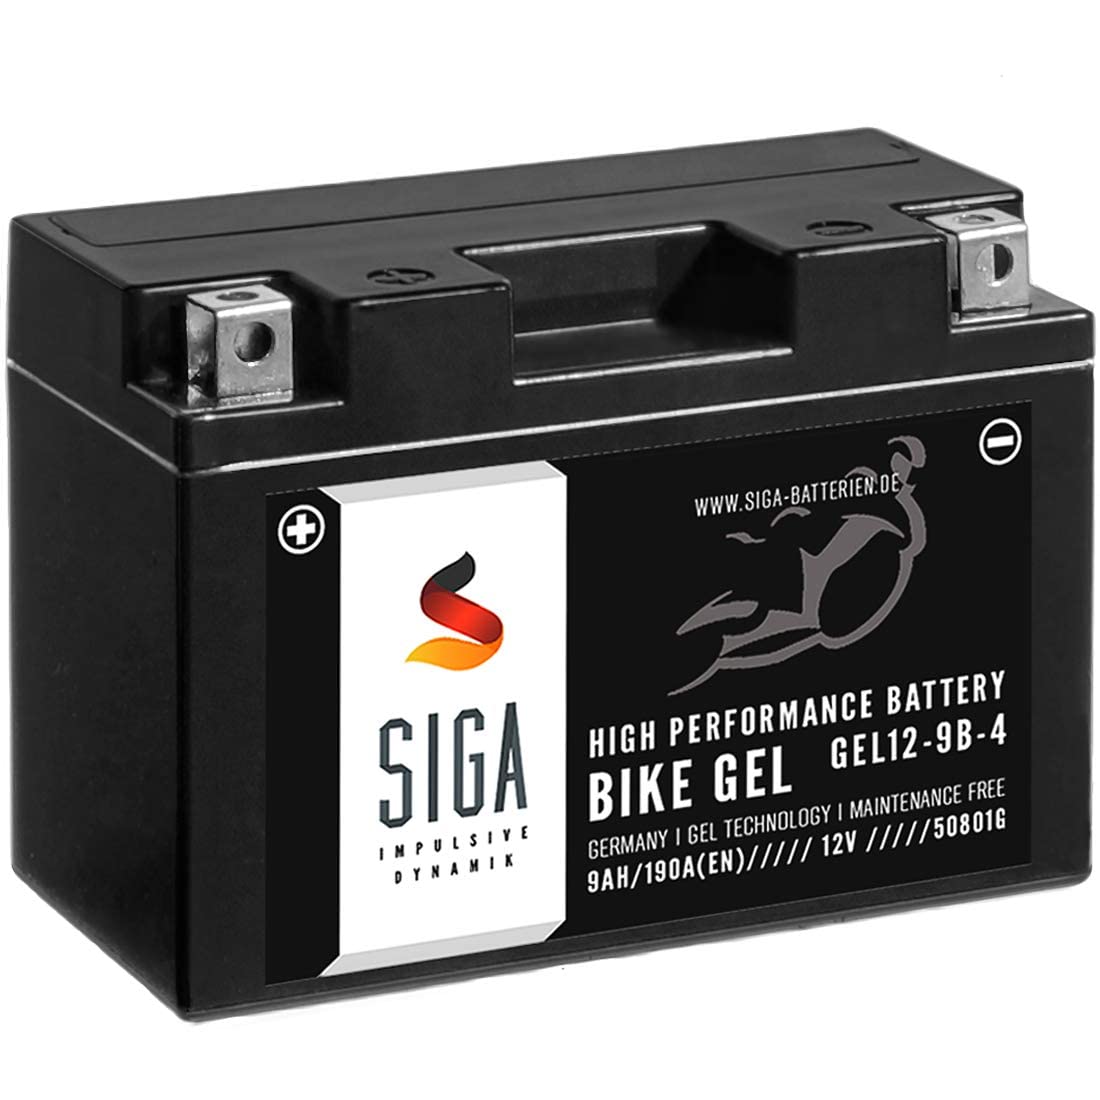 SIGA GEL Motorradbatterie 12V 9Ah 190A/EN Gel Batterie YT9B-4 GEL12-9B-4 GT9B-4 YT9B-BS 50801